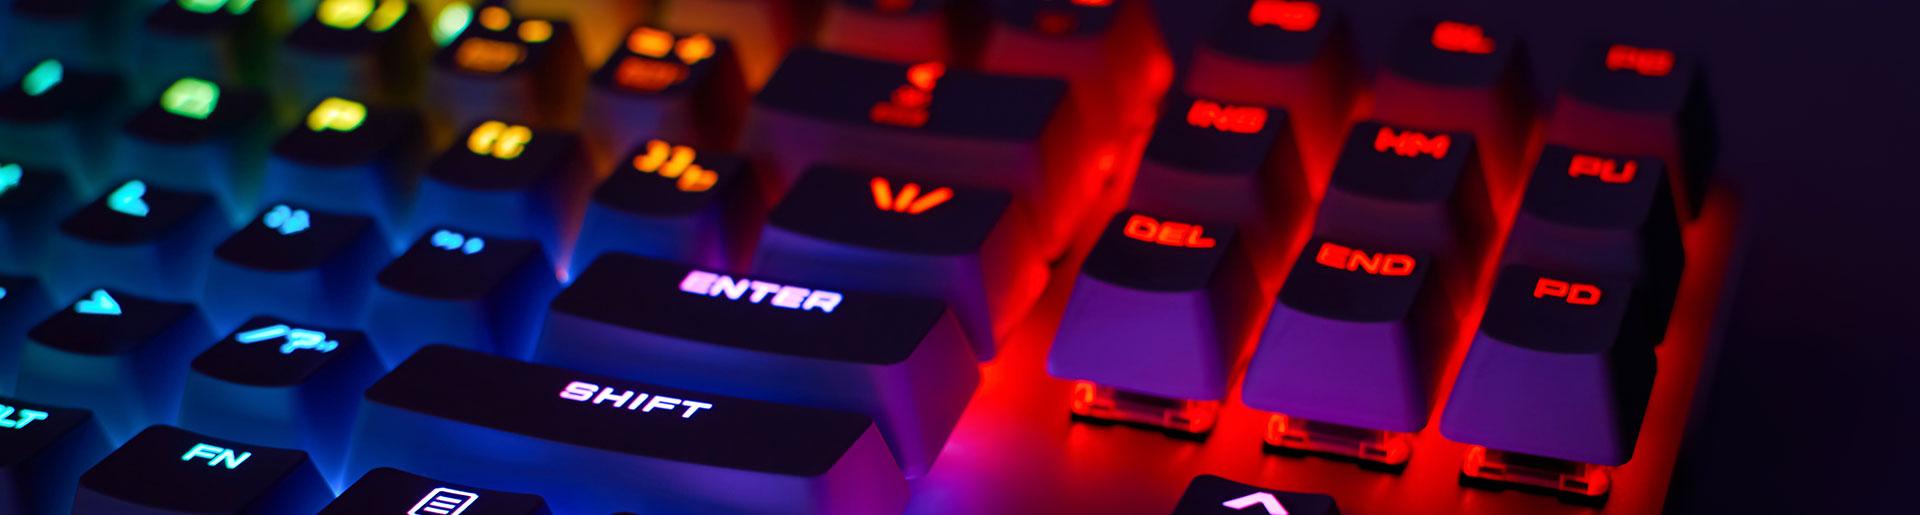 un clavier d'ordinateur illuminé